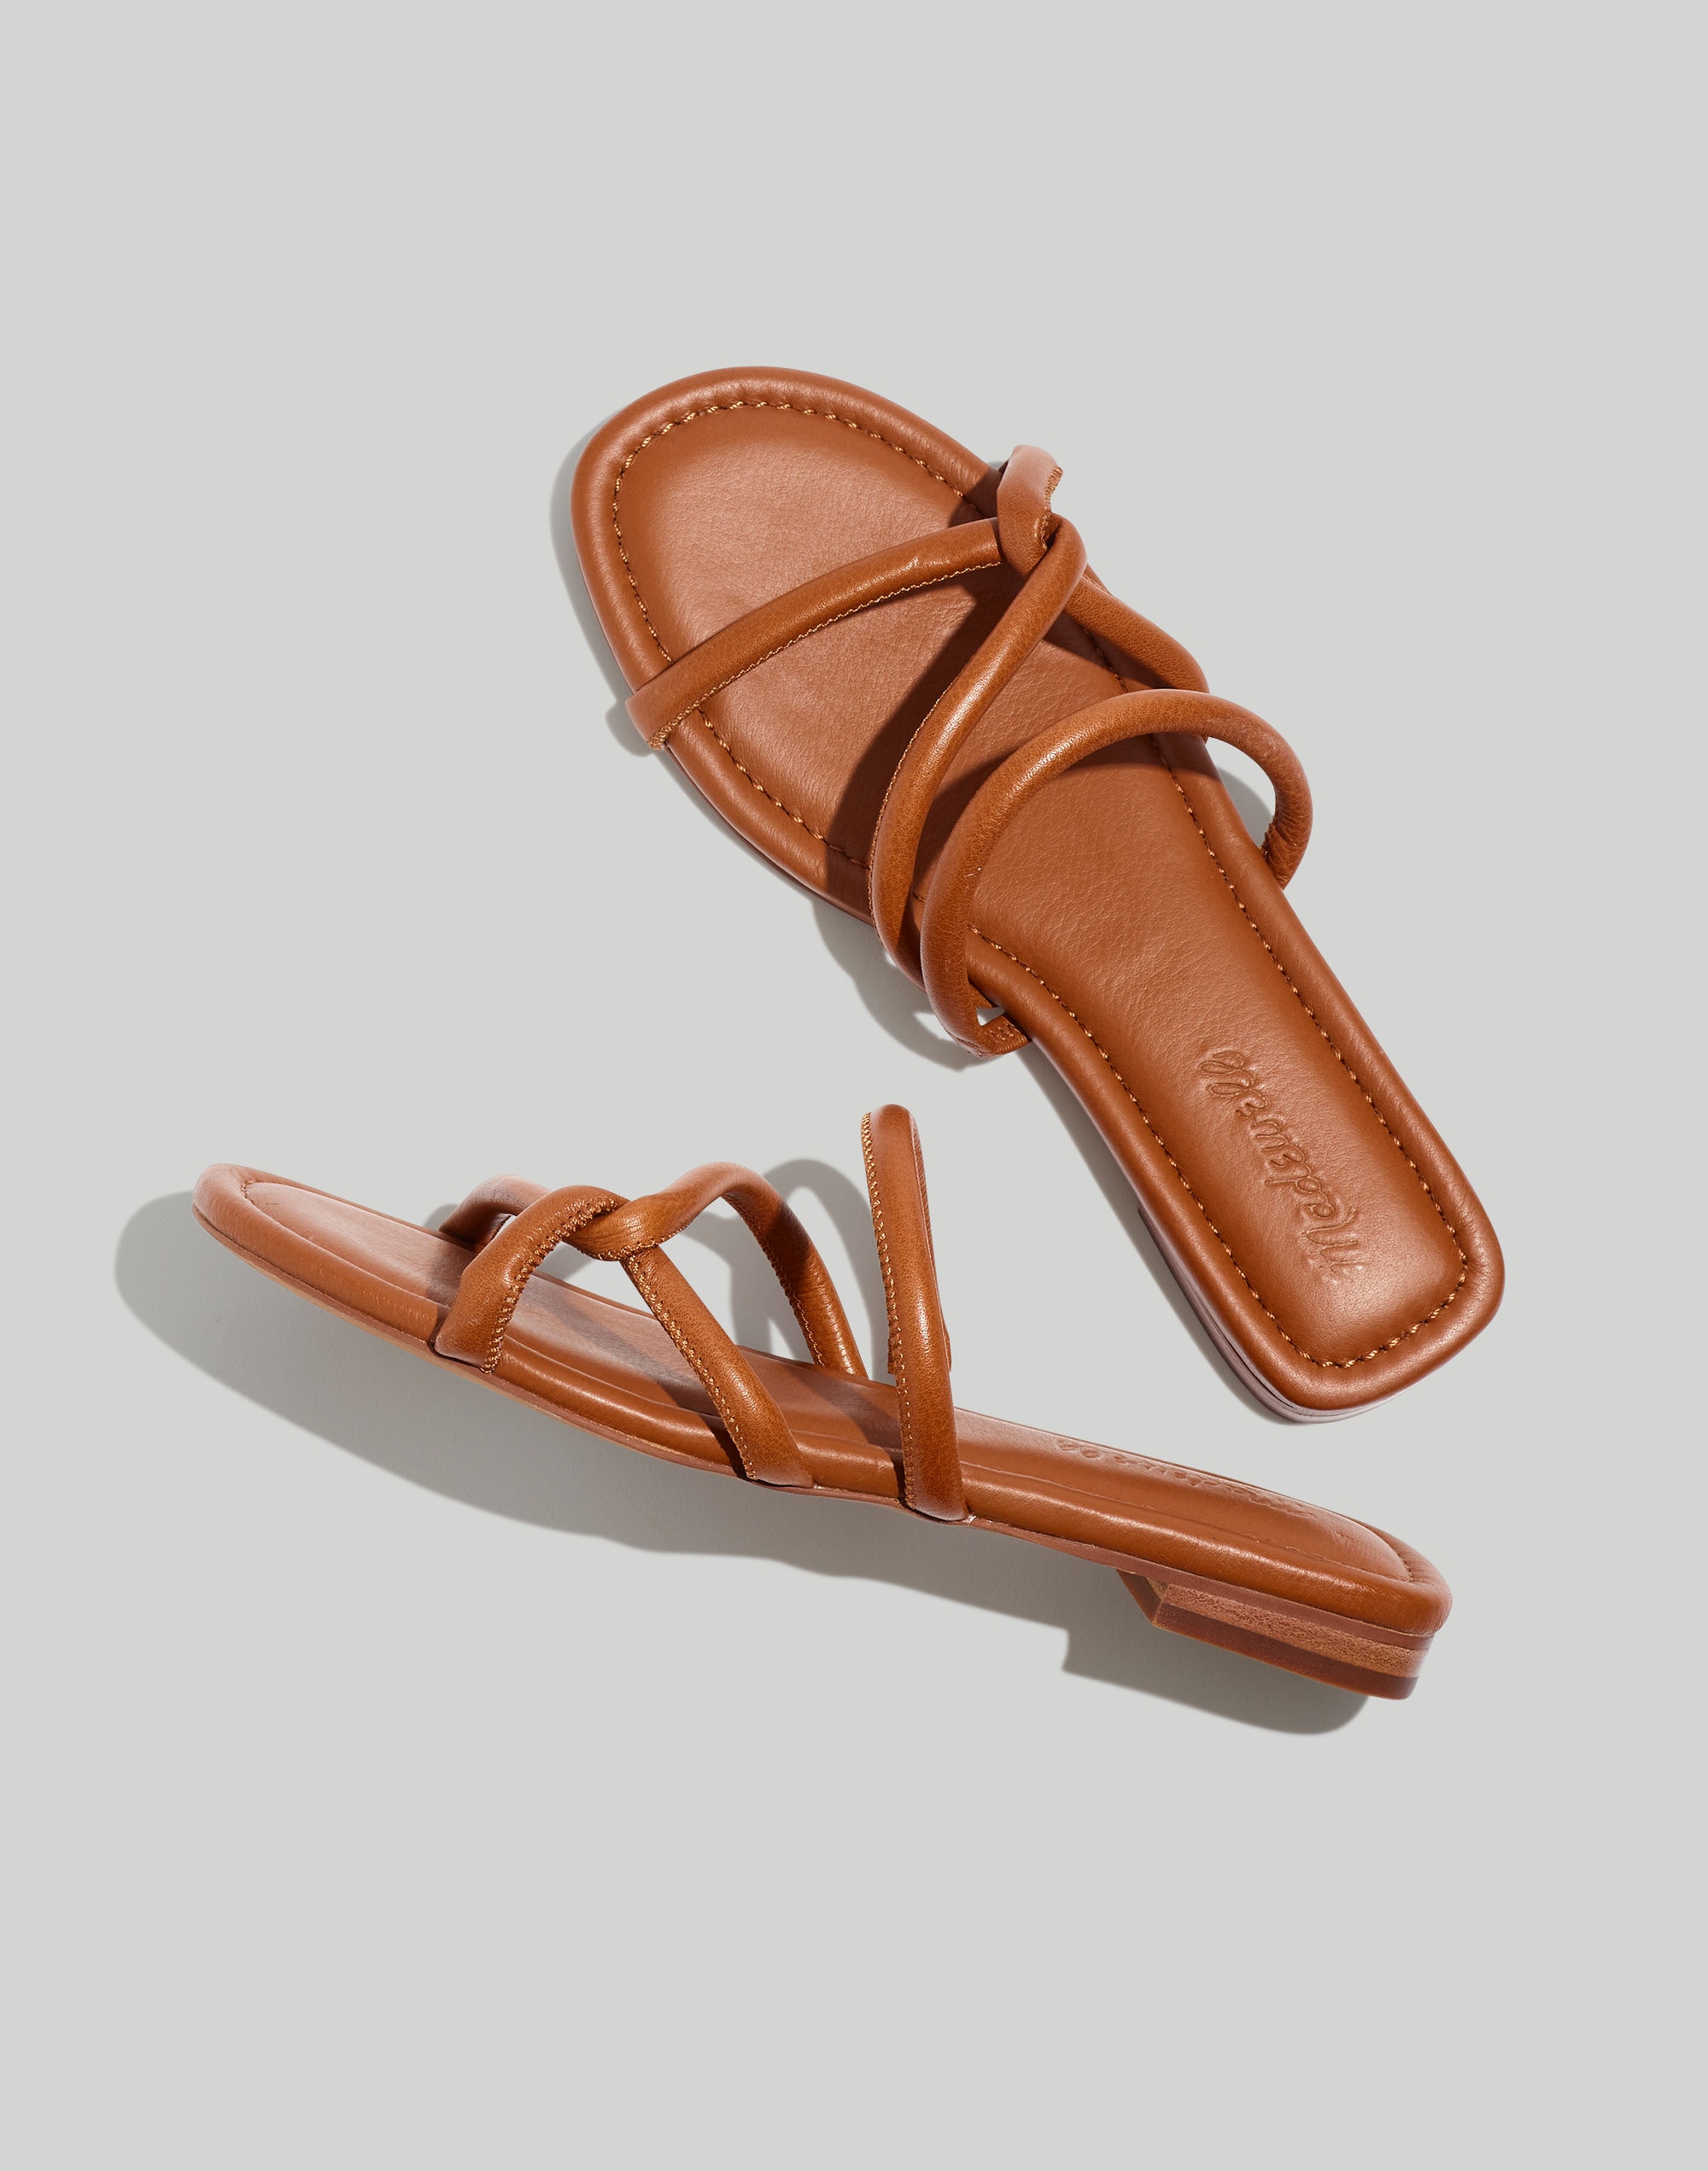 The Amel Slide Sandal